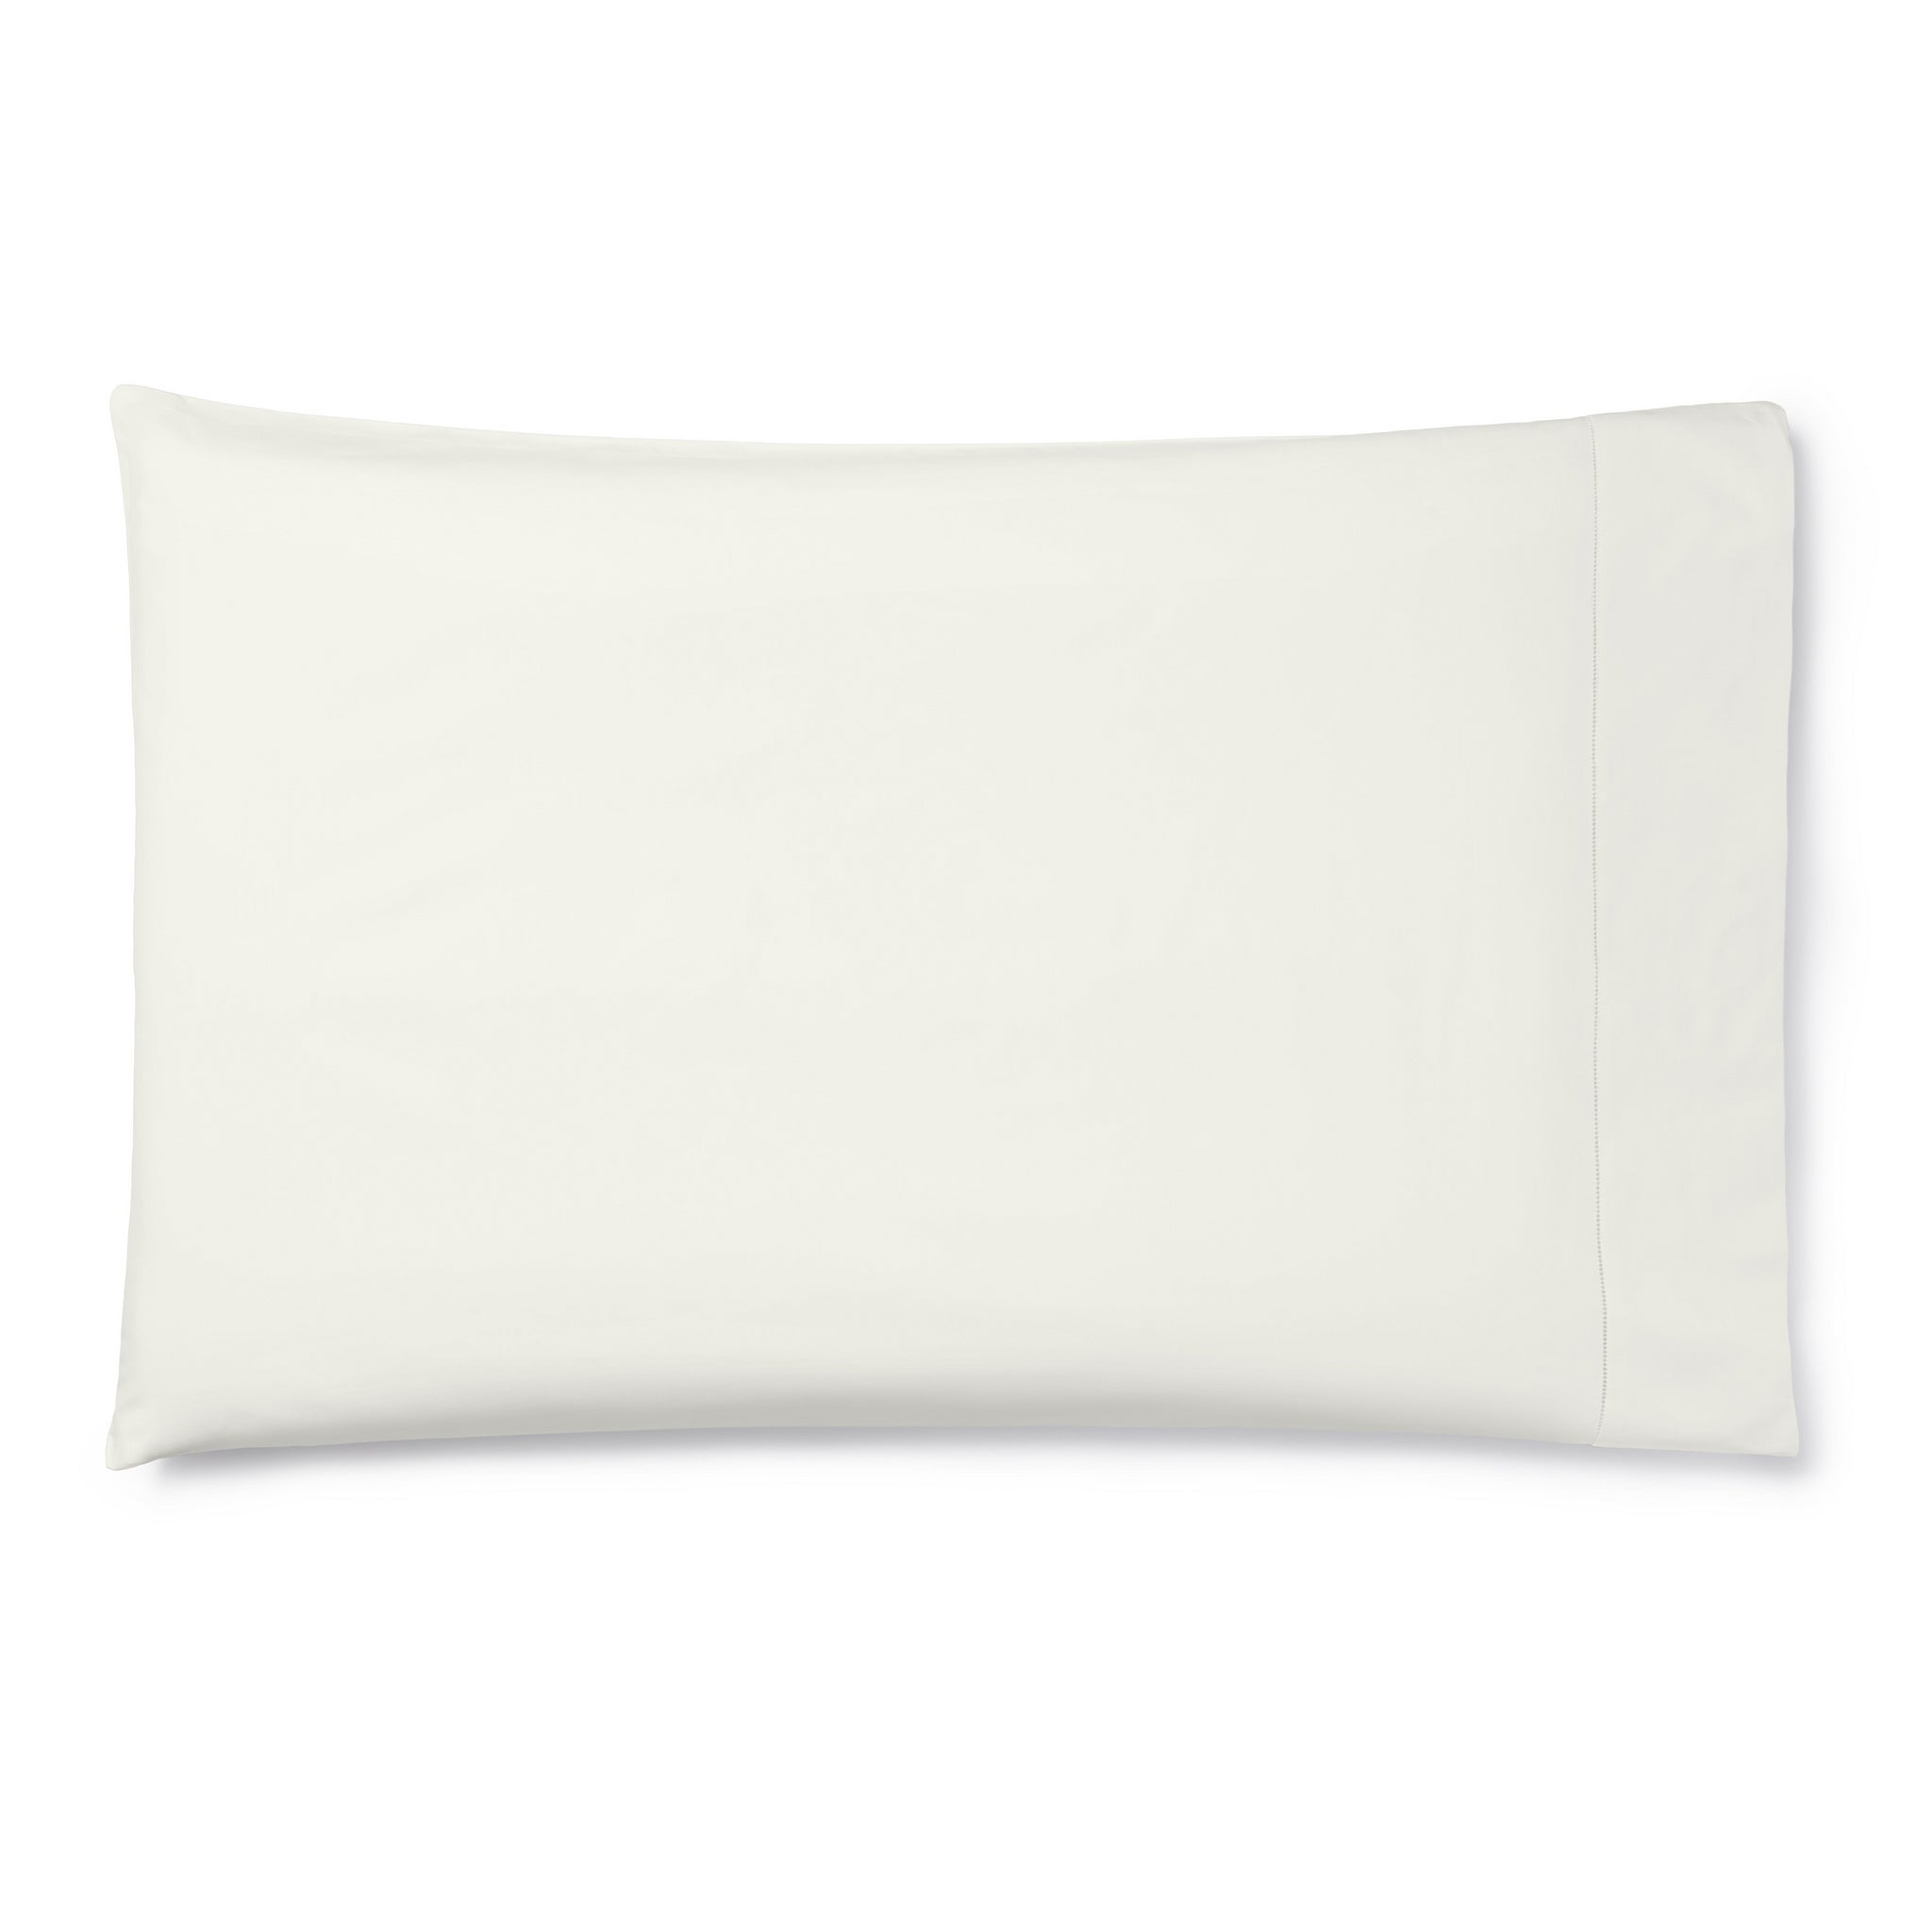 Celeste Pillowcase Pair in Ivory